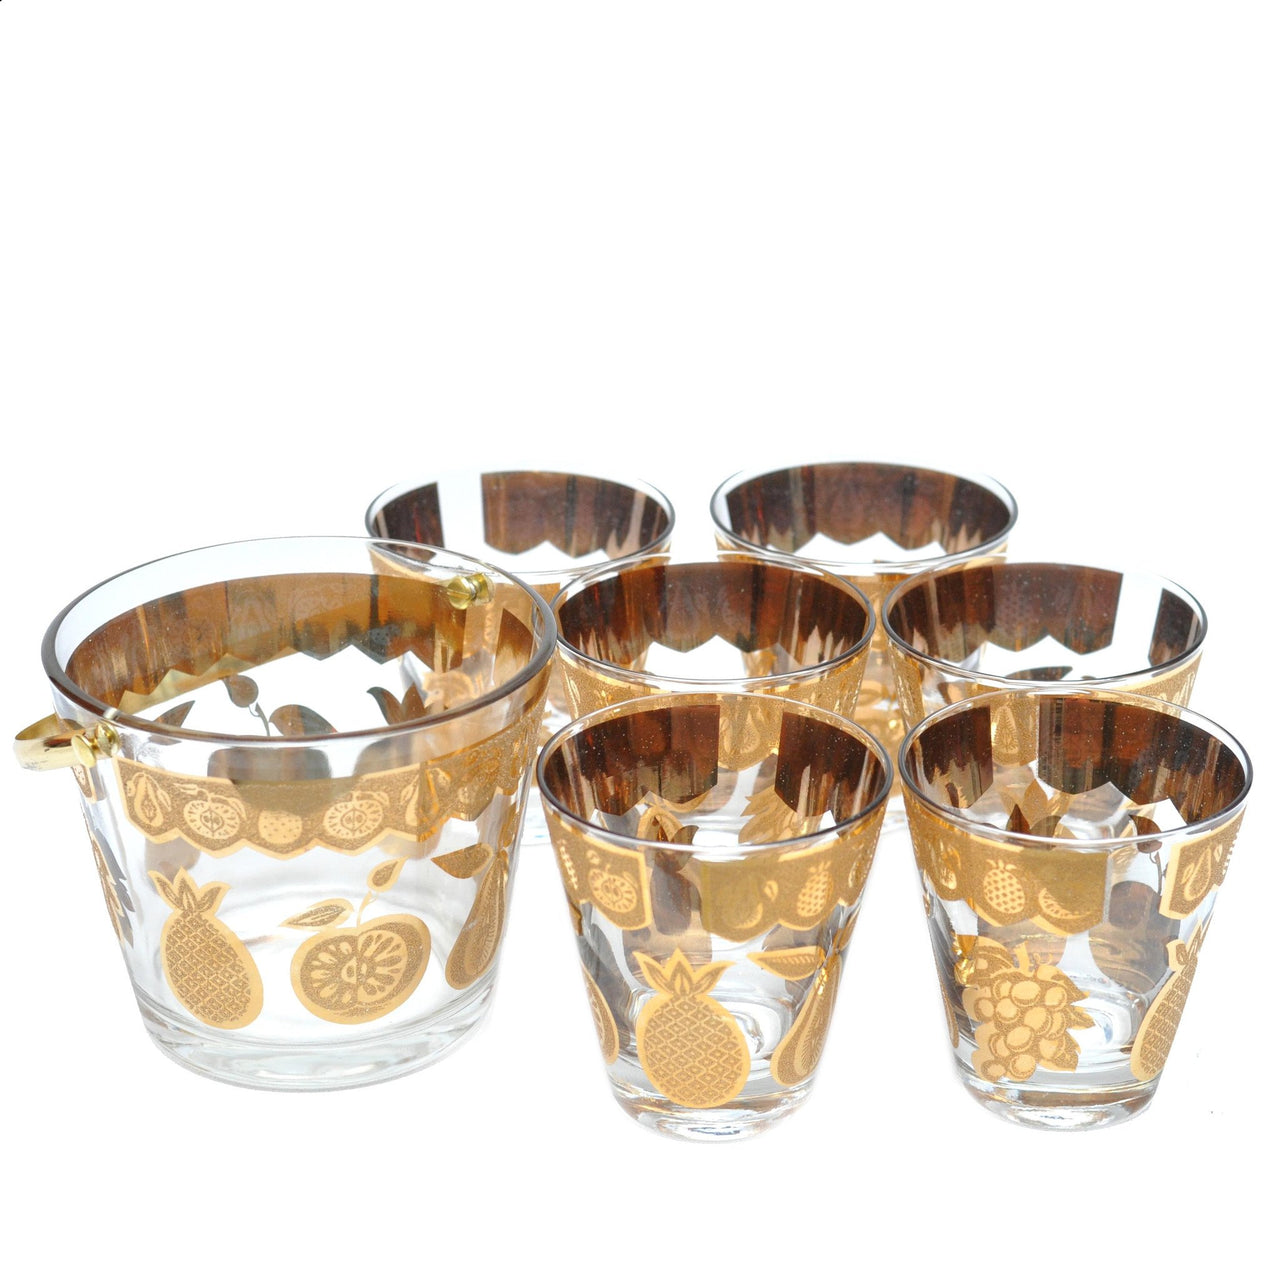 The Hour Shop, Vintage Culver Florentine Gold Fruit Glasses Set